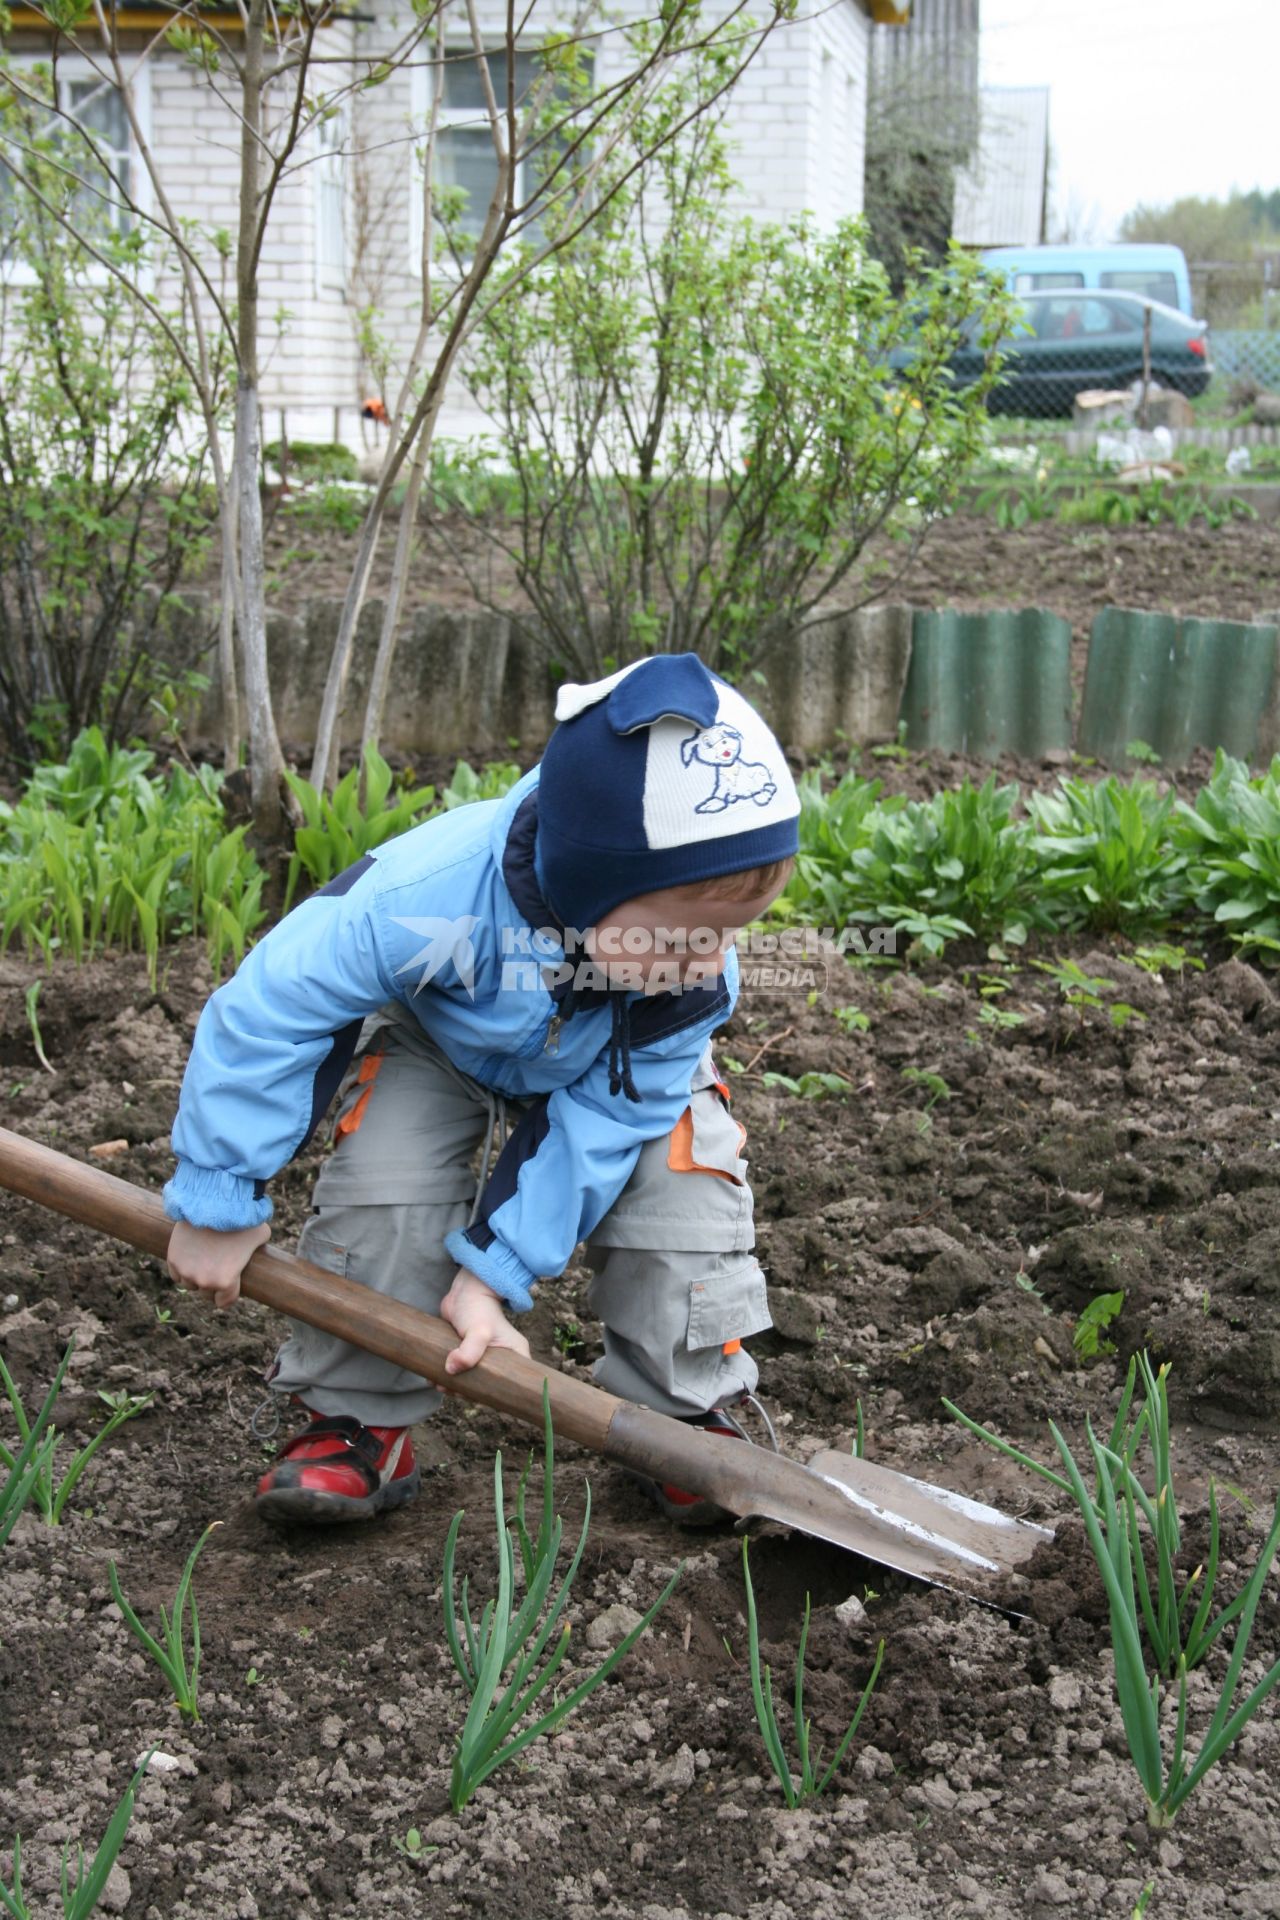 Начало дачного сезона. Ребенок с лопатой вскапывает грядки.